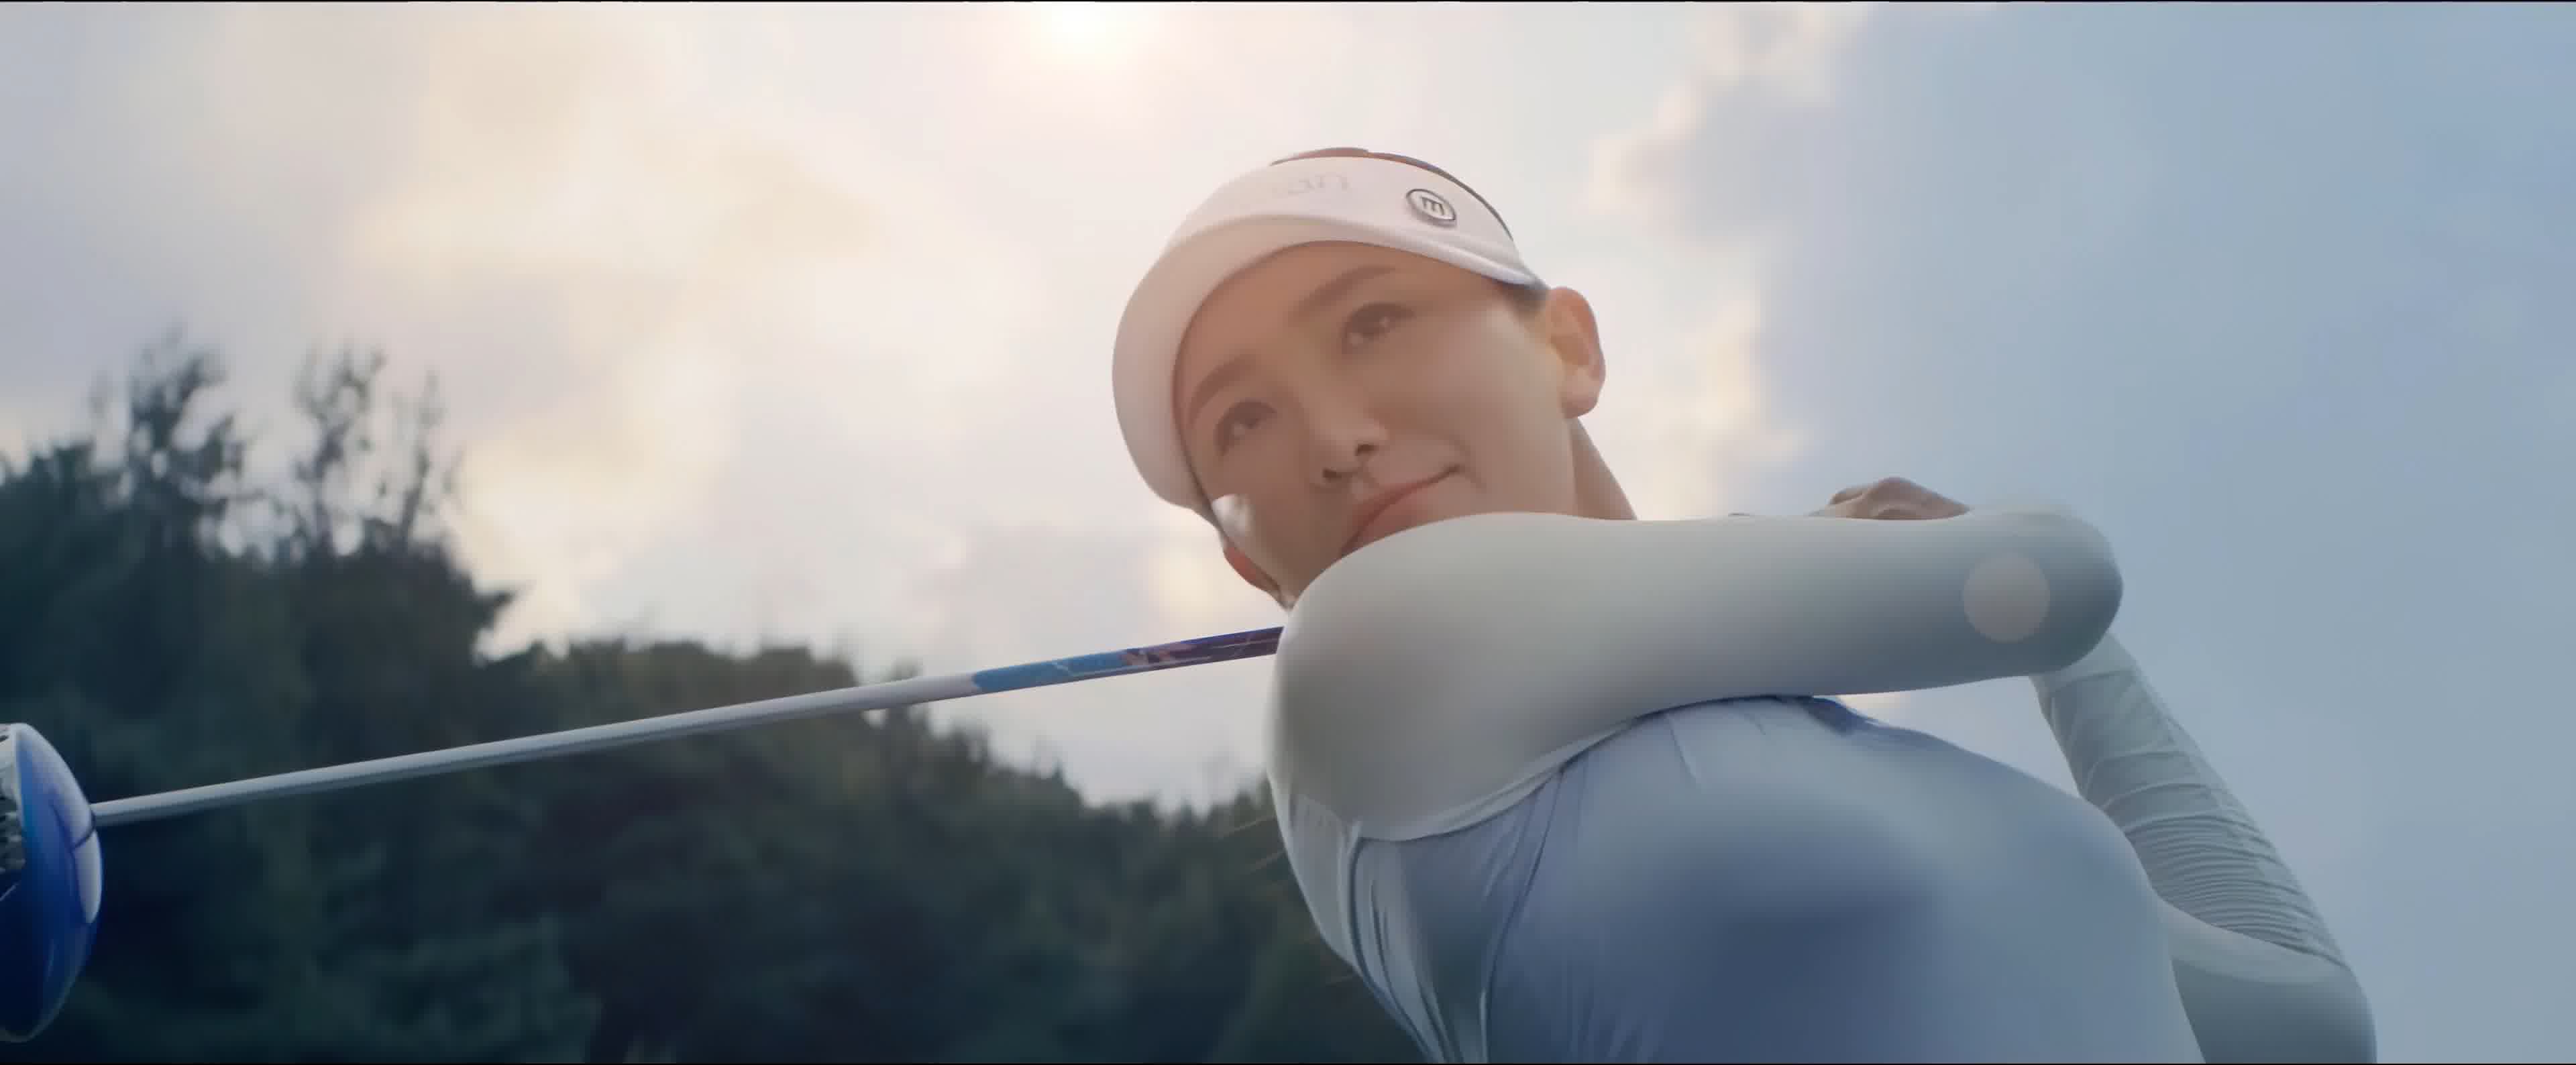 年轻女子打高尔夫-蓝牛仔影像-中国原创广告影像素材